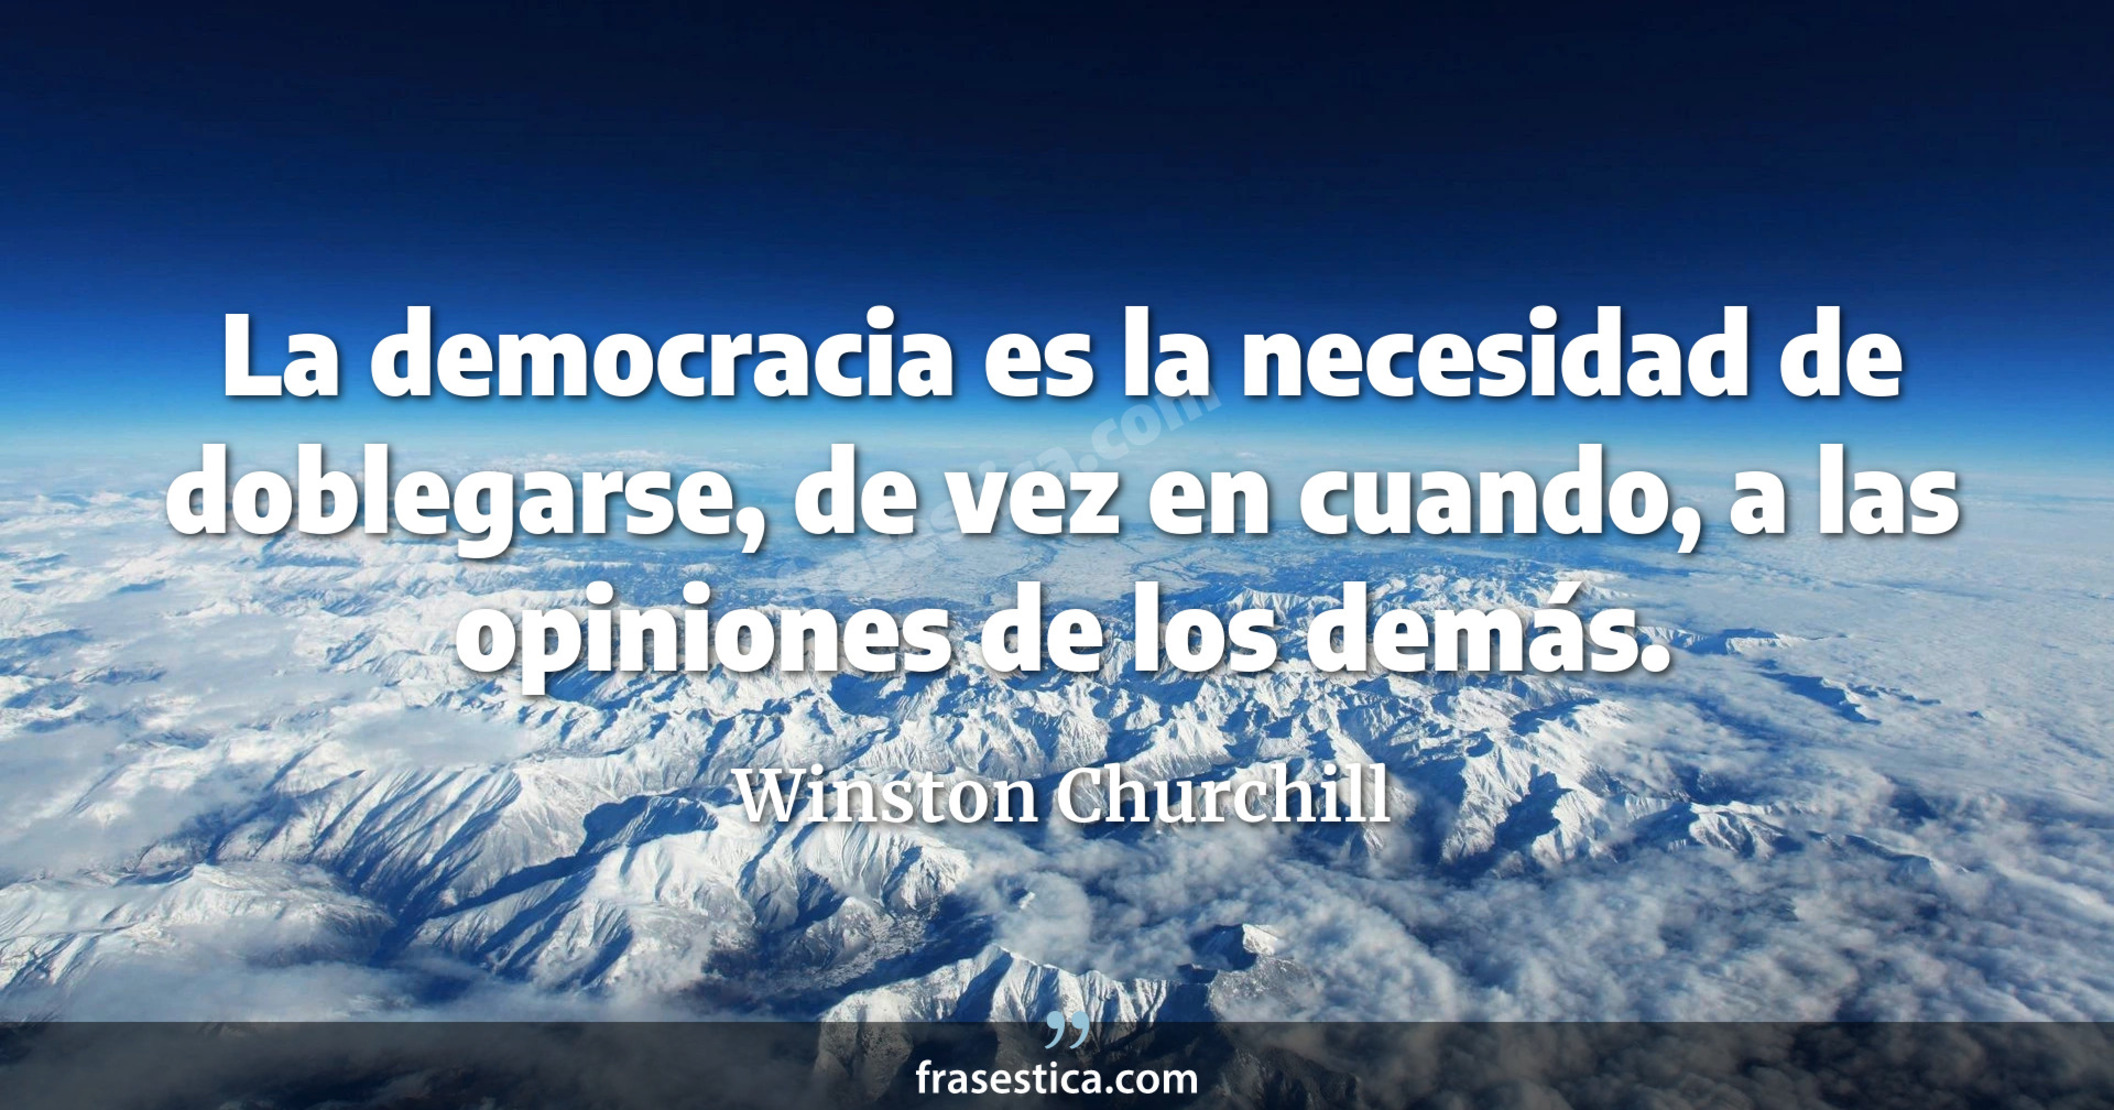 La democracia es la necesidad de doblegarse, de vez en cuando, a las opiniones de los demás. - Winston Churchill